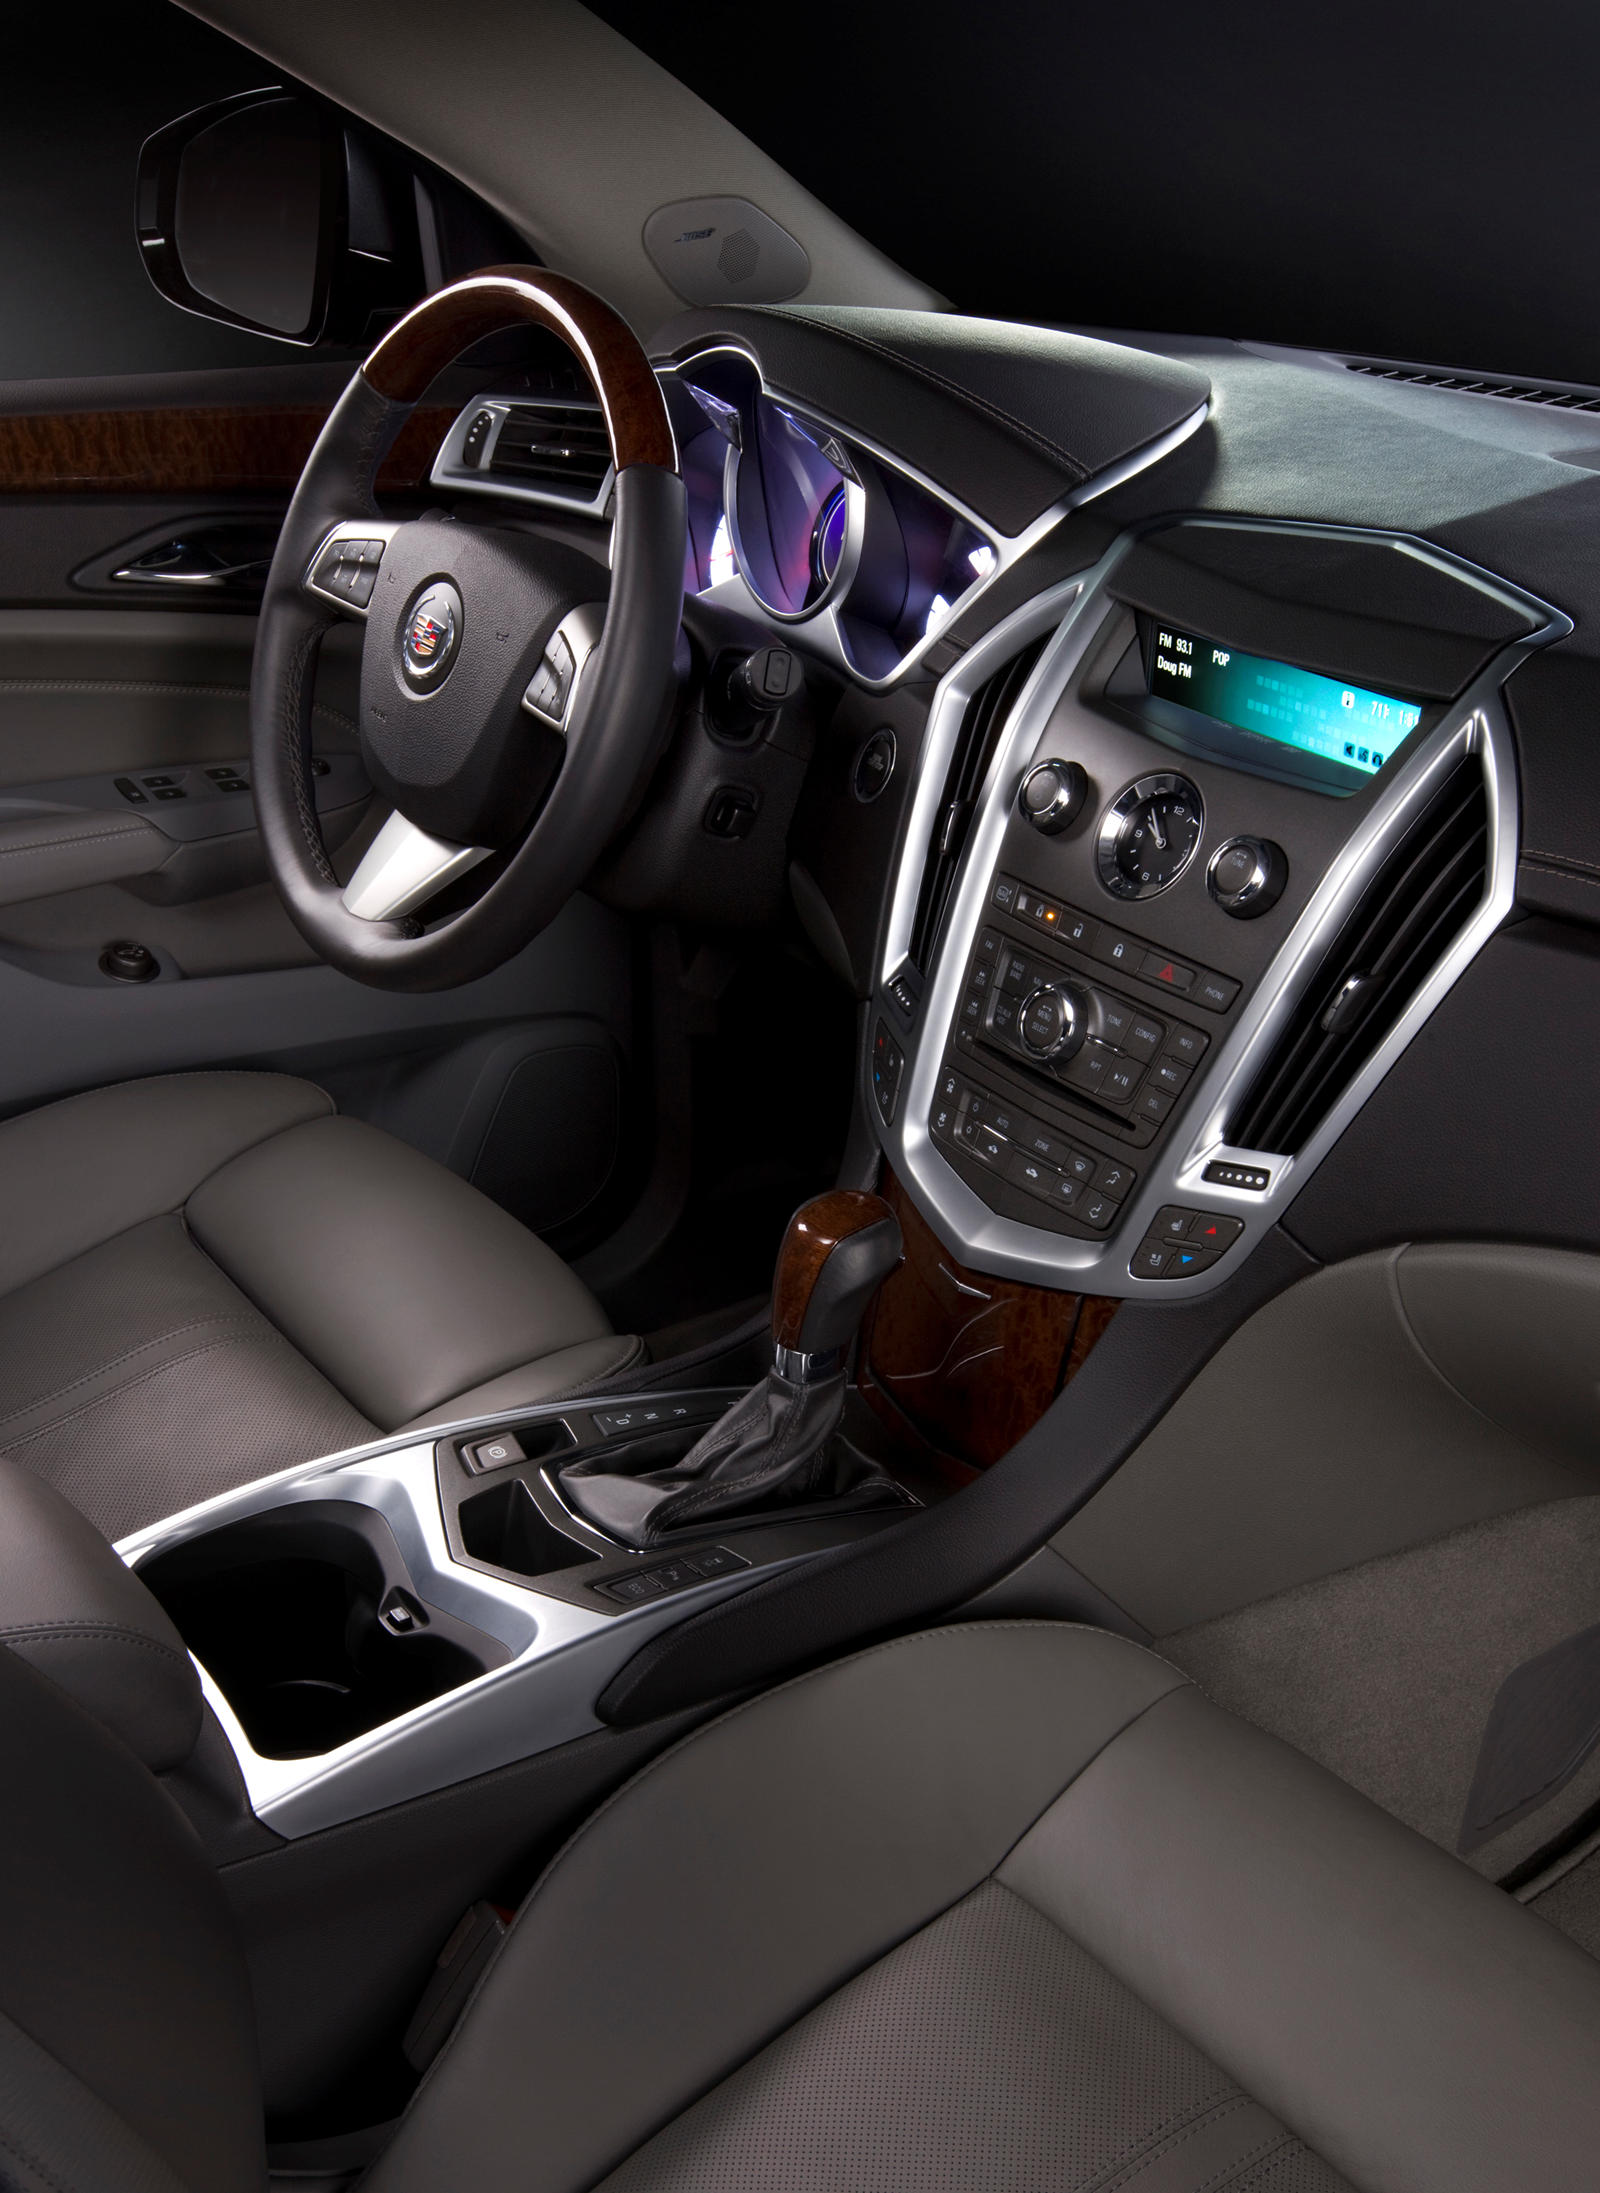 2011 Cadillac SRX Interior Photos | CarBuzz